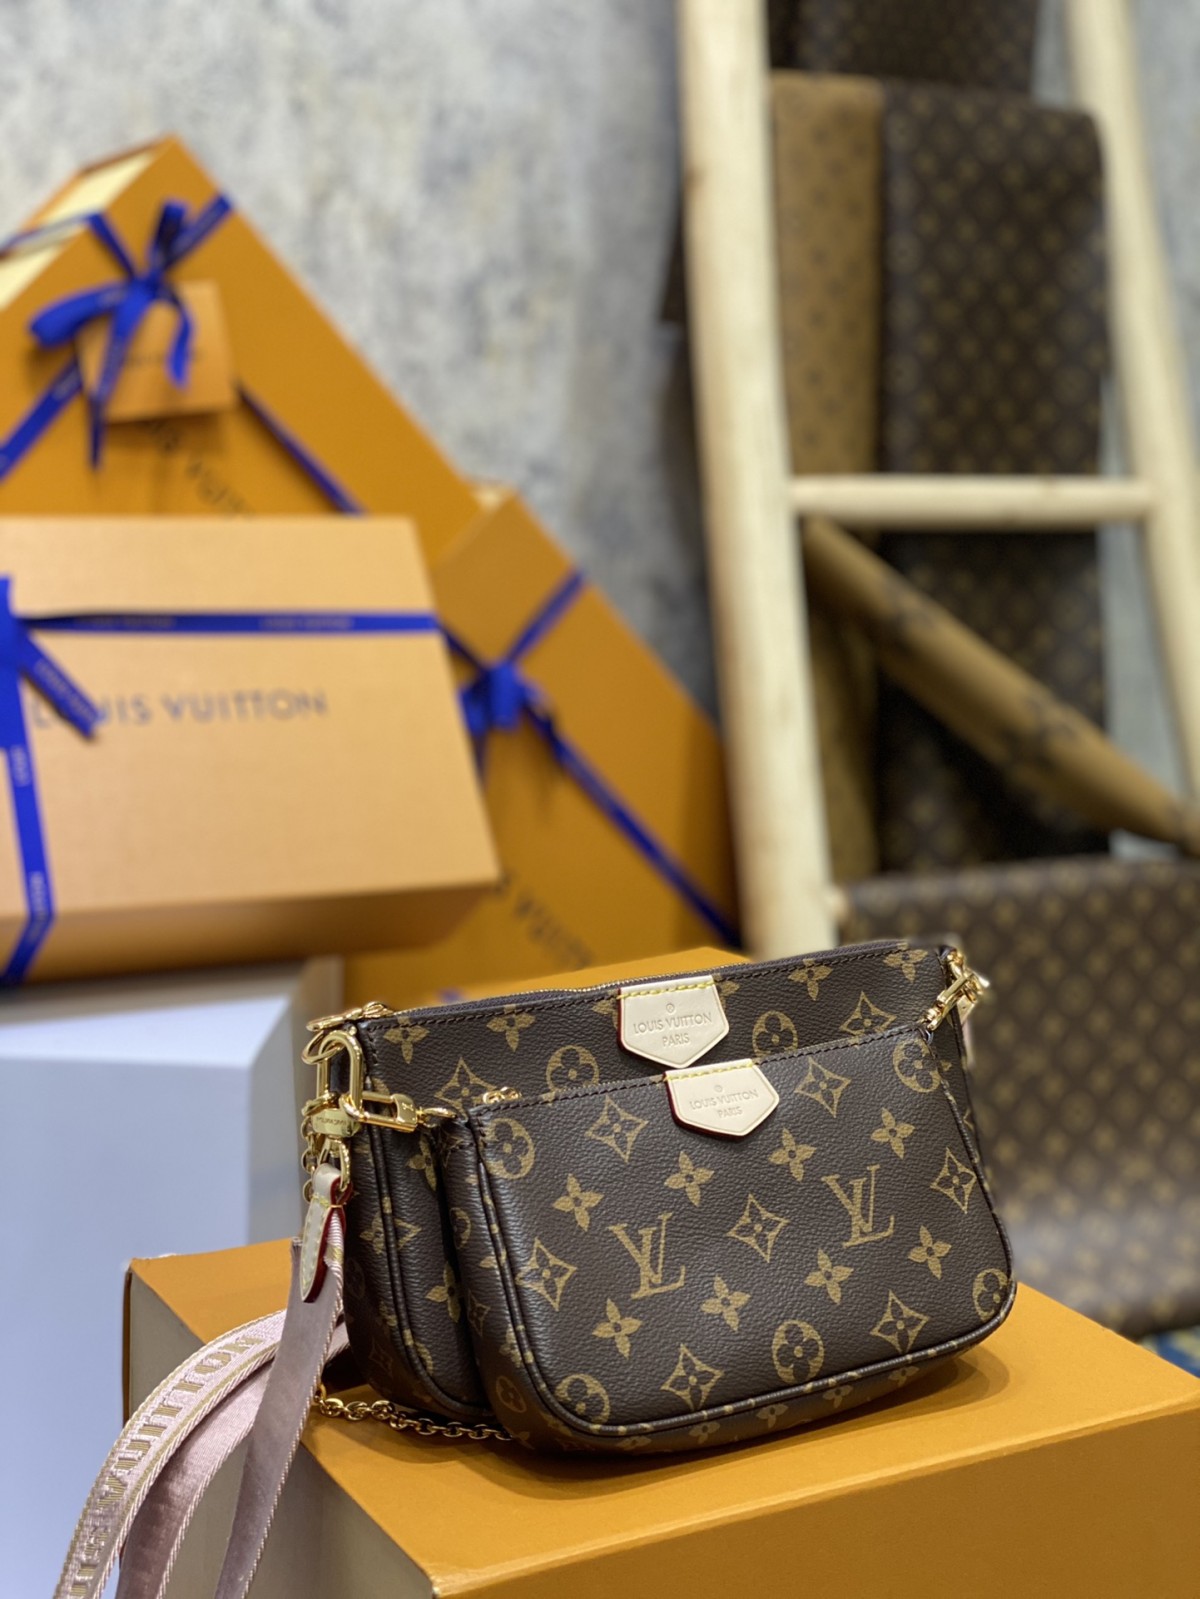 Kouman mwen ka achte Louis Vuitton bag bracelet replica online? (2022 dènye)-Best Quality Fake Louis Vuitton Bag Online Store, Replica designer bag ru